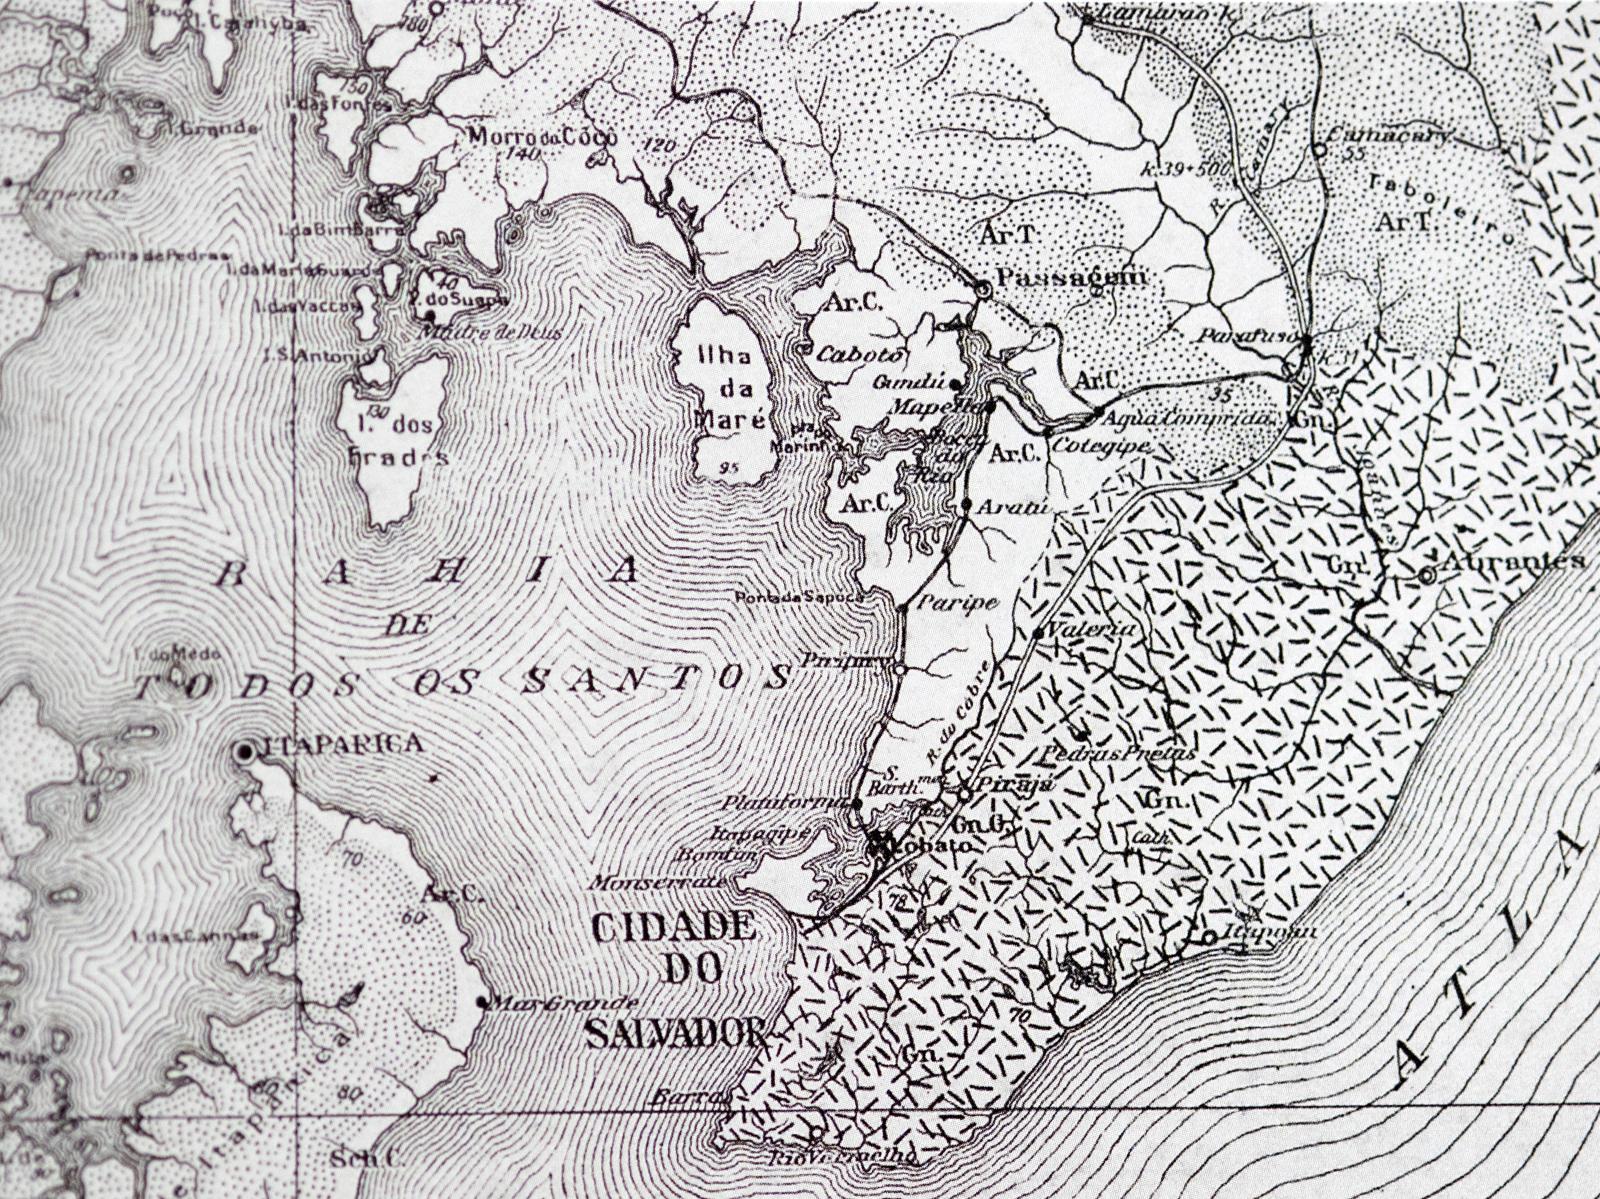 A detail of an historical map o...s os Santos Bay Salvador Brazil